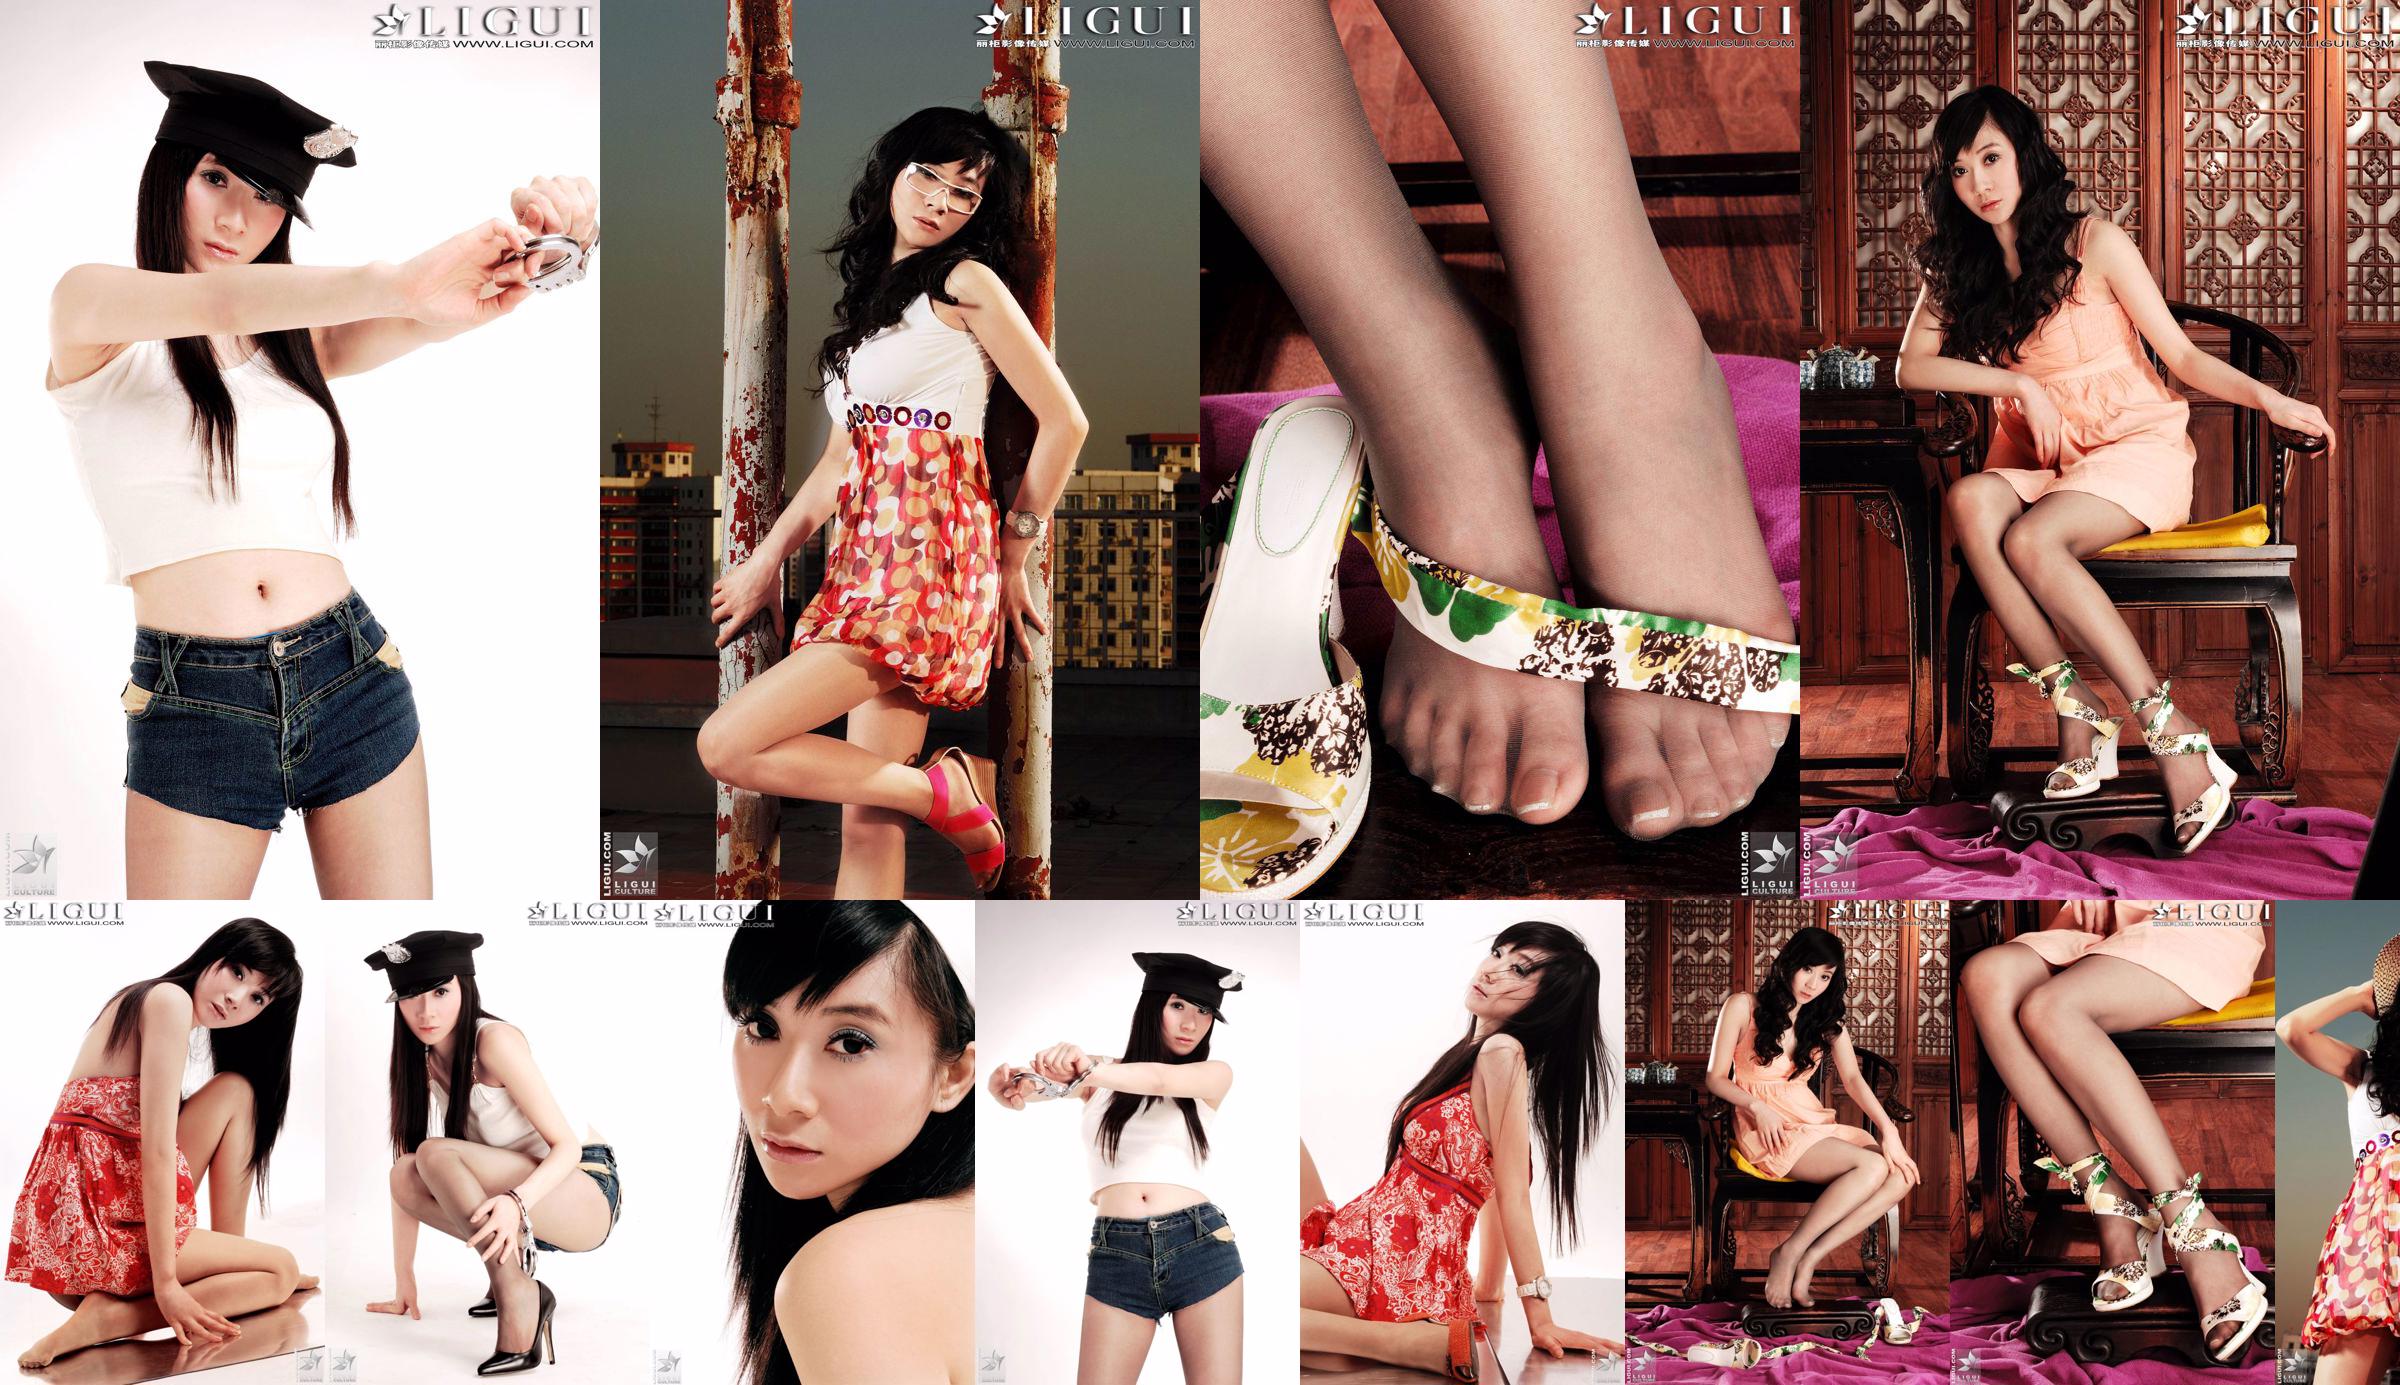 [丽 柜 LiGui] Gambar Foto Model Jinxin Silky Foot dan Beautiful Legs No.041295 Halaman 1